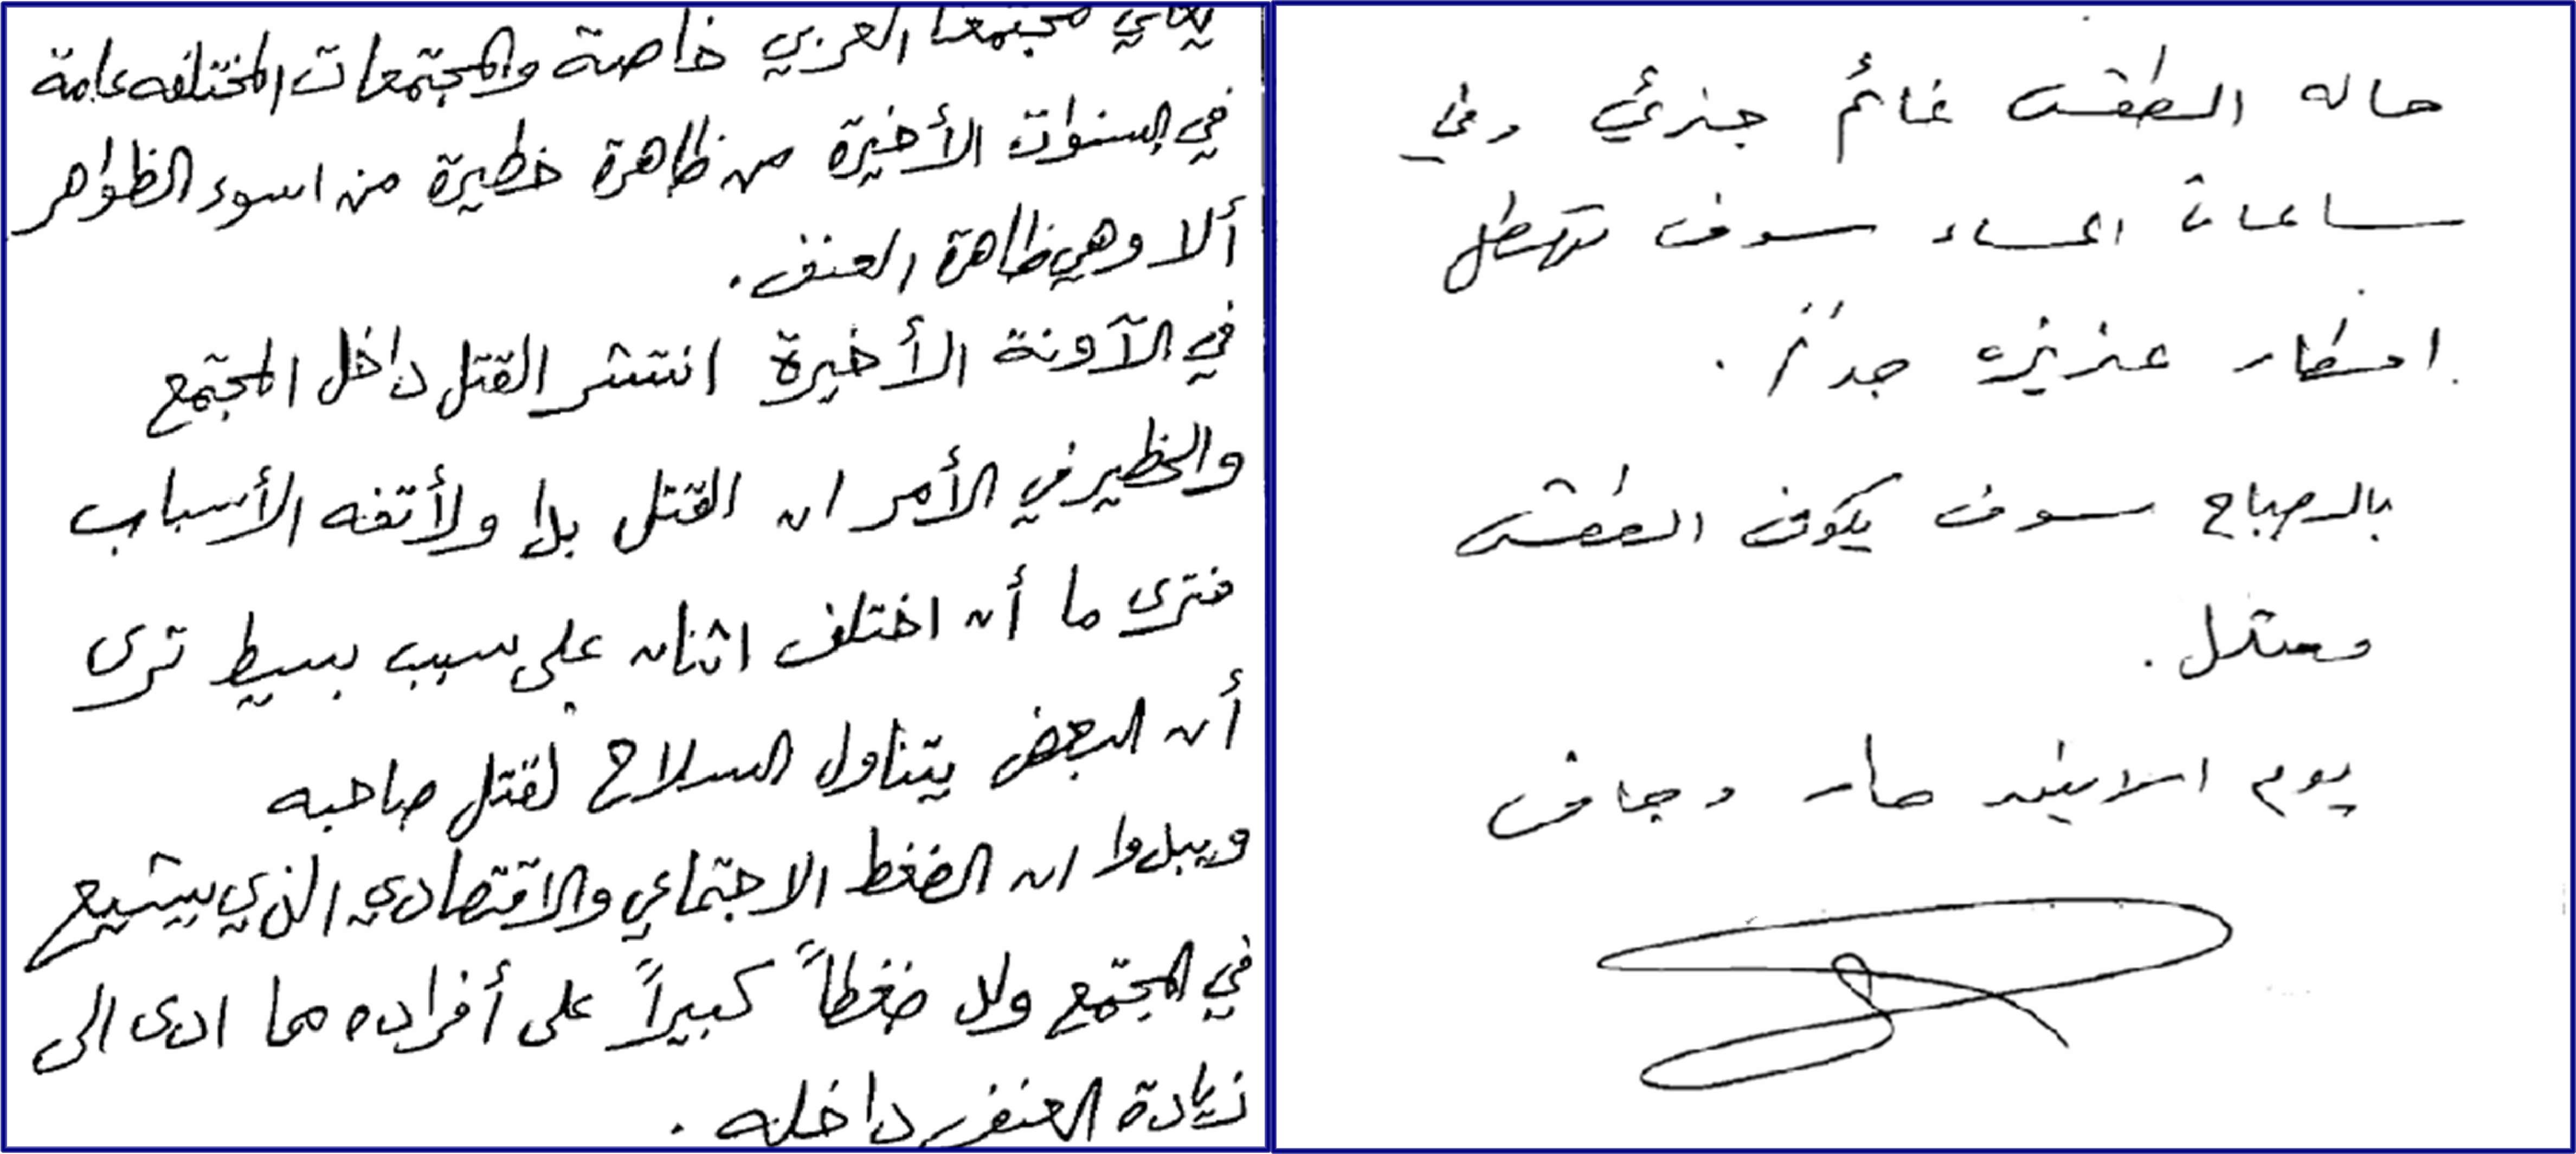 כתב יד ערבי